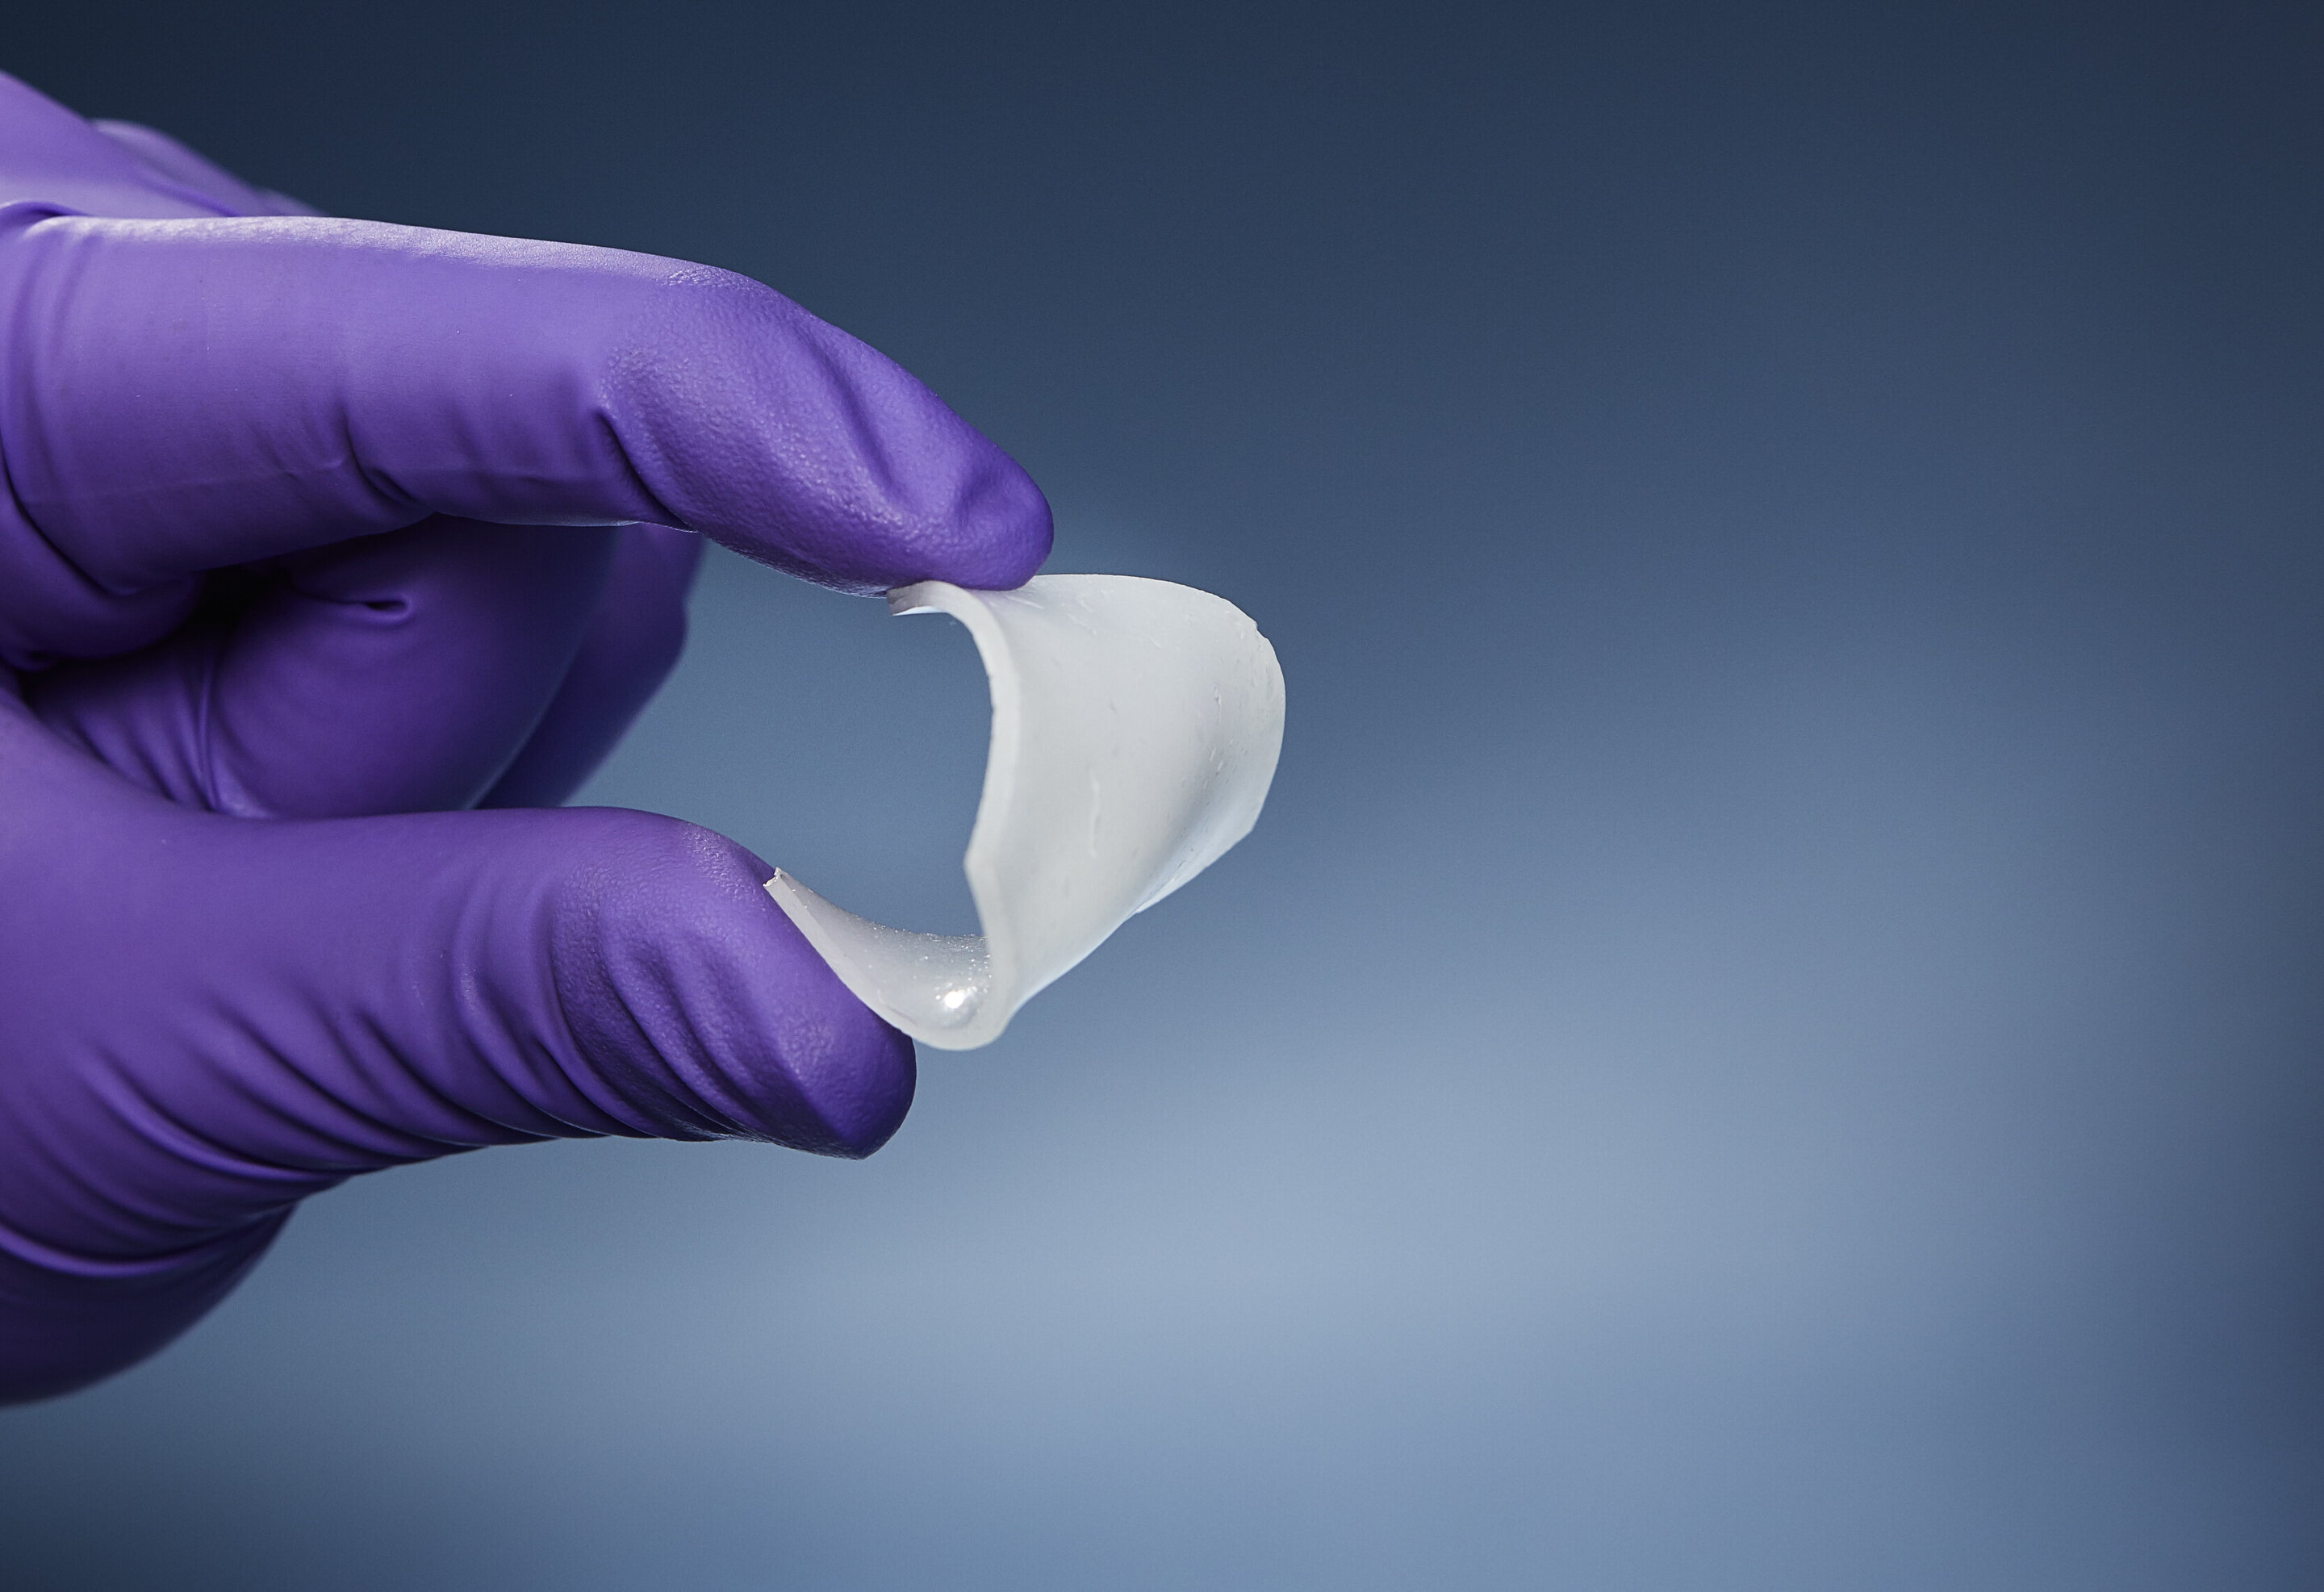 Um novo material semelhante à borracha foi criado e pode ser usado para substituir os tecidos humanos.